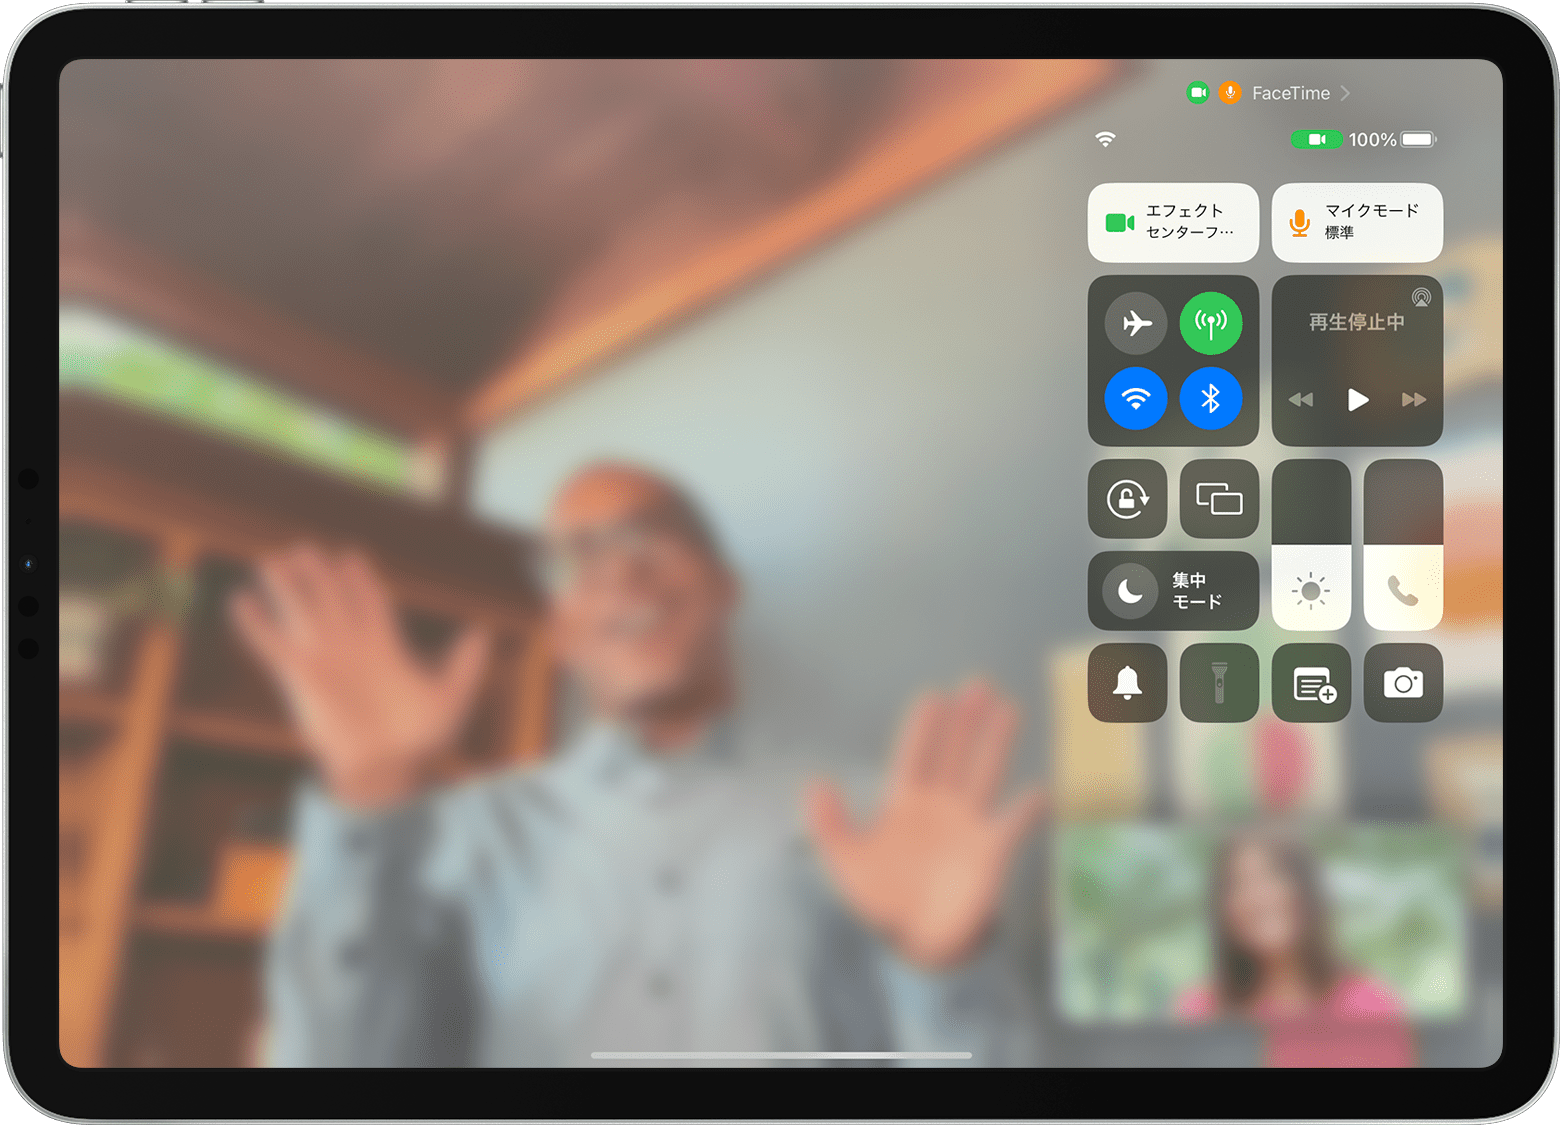 iPad で FaceTime の通話画面とコントロールセンターが開き、「エフェクト」ボタンが表示されているところ